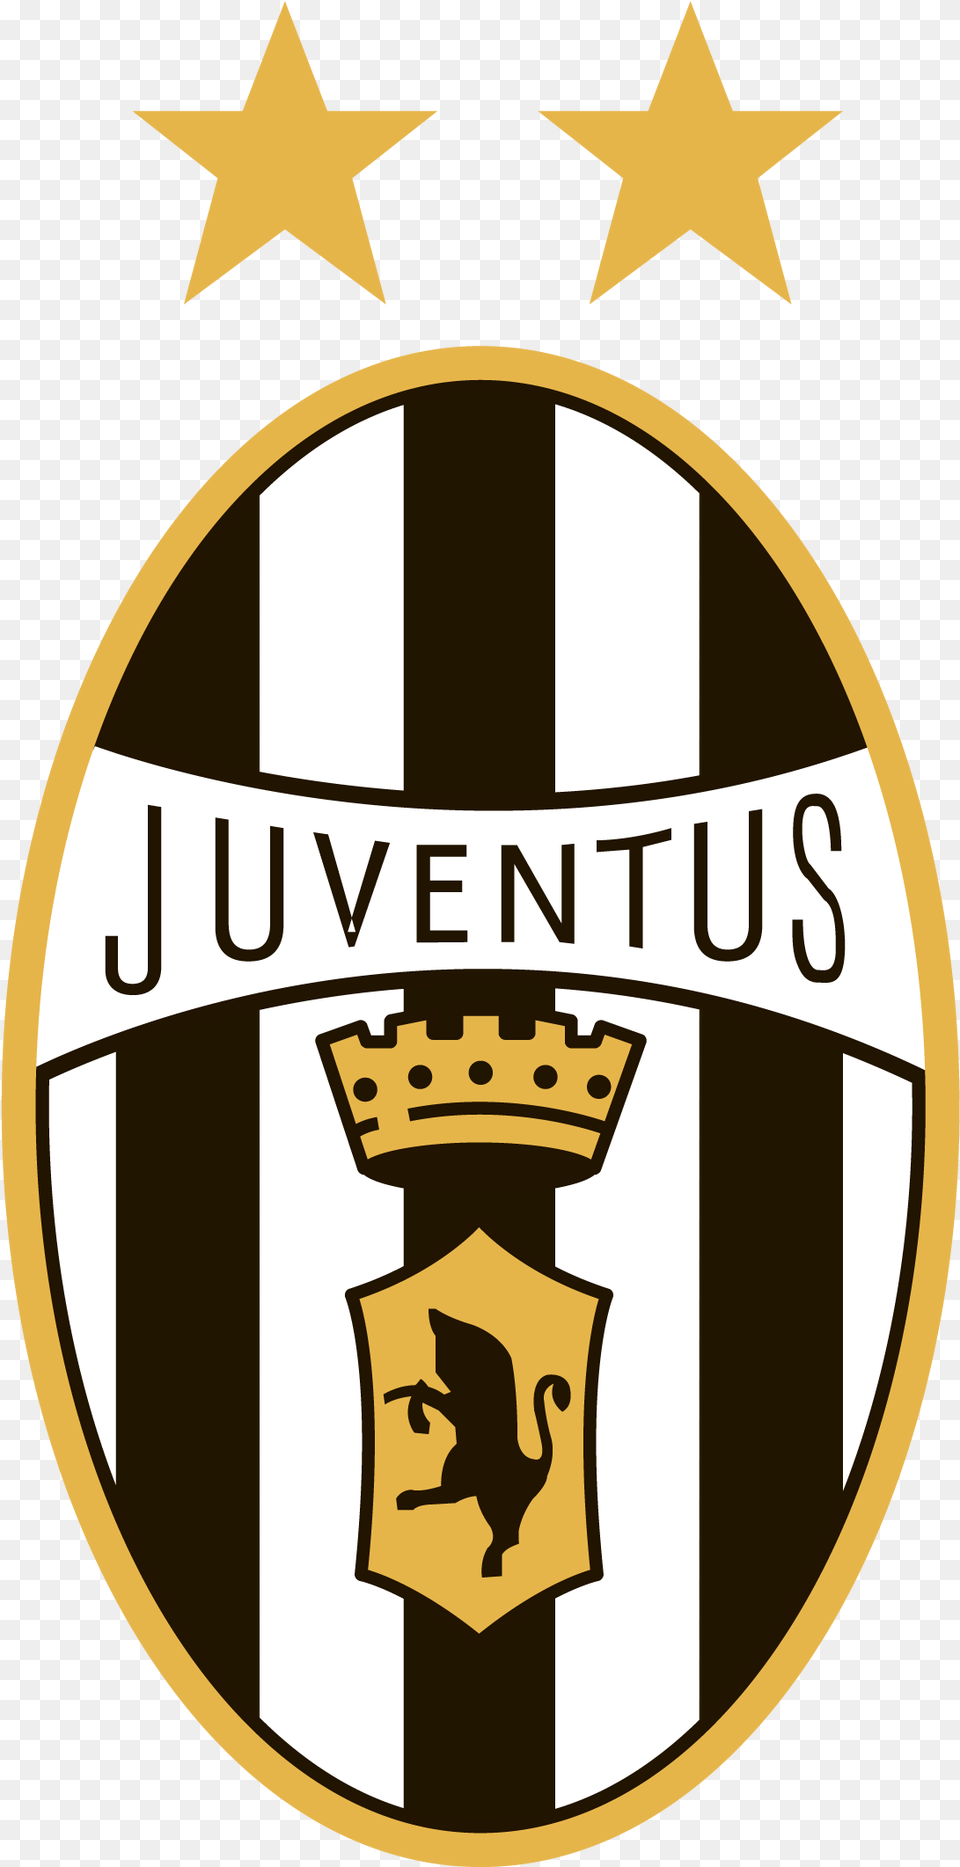 Juventus Sign Juventus Logo, Badge, Symbol, Emblem Png Image